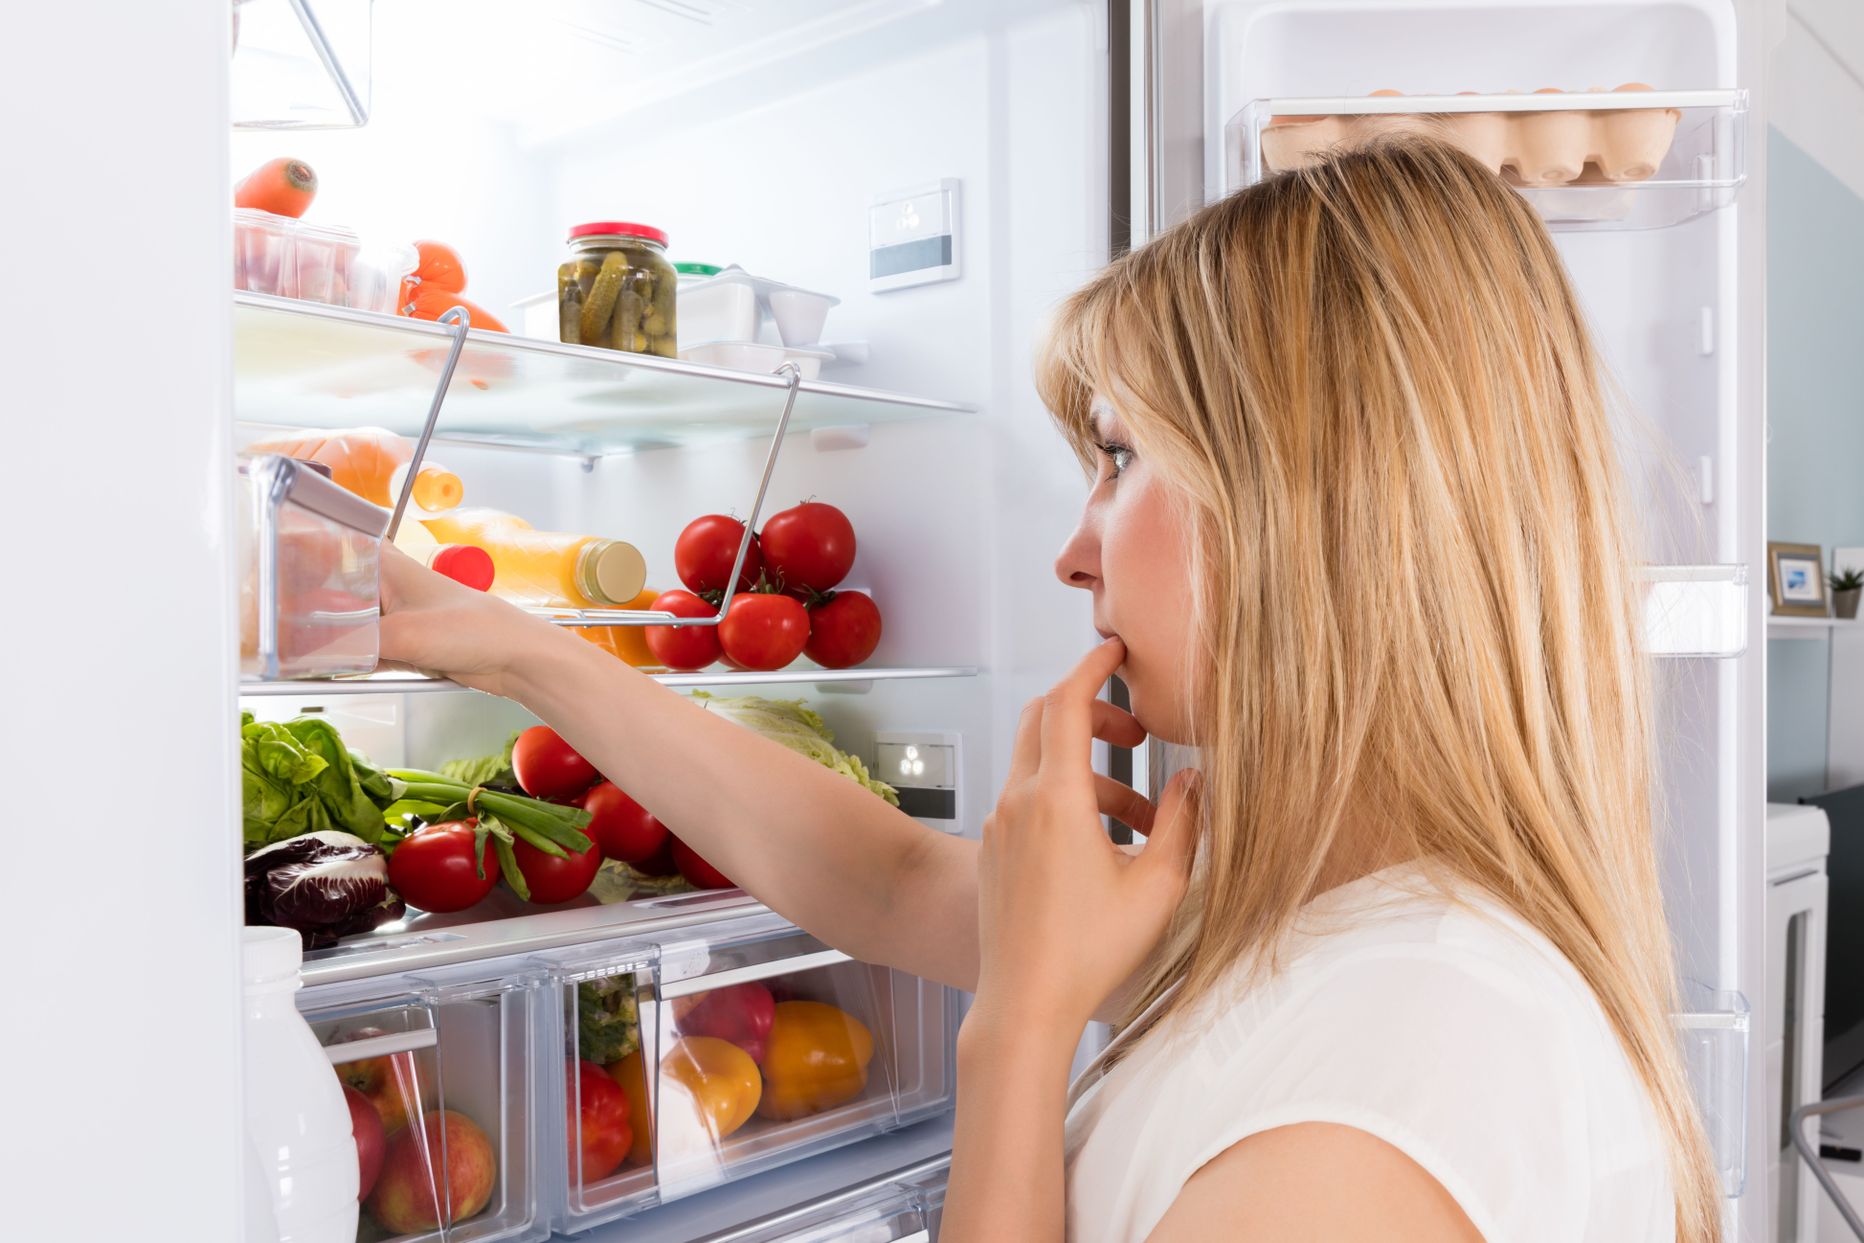 Et valmistoidud külmkapis kiirelt ei rikneks, tasub need ootele panna sügavkülmikusse.